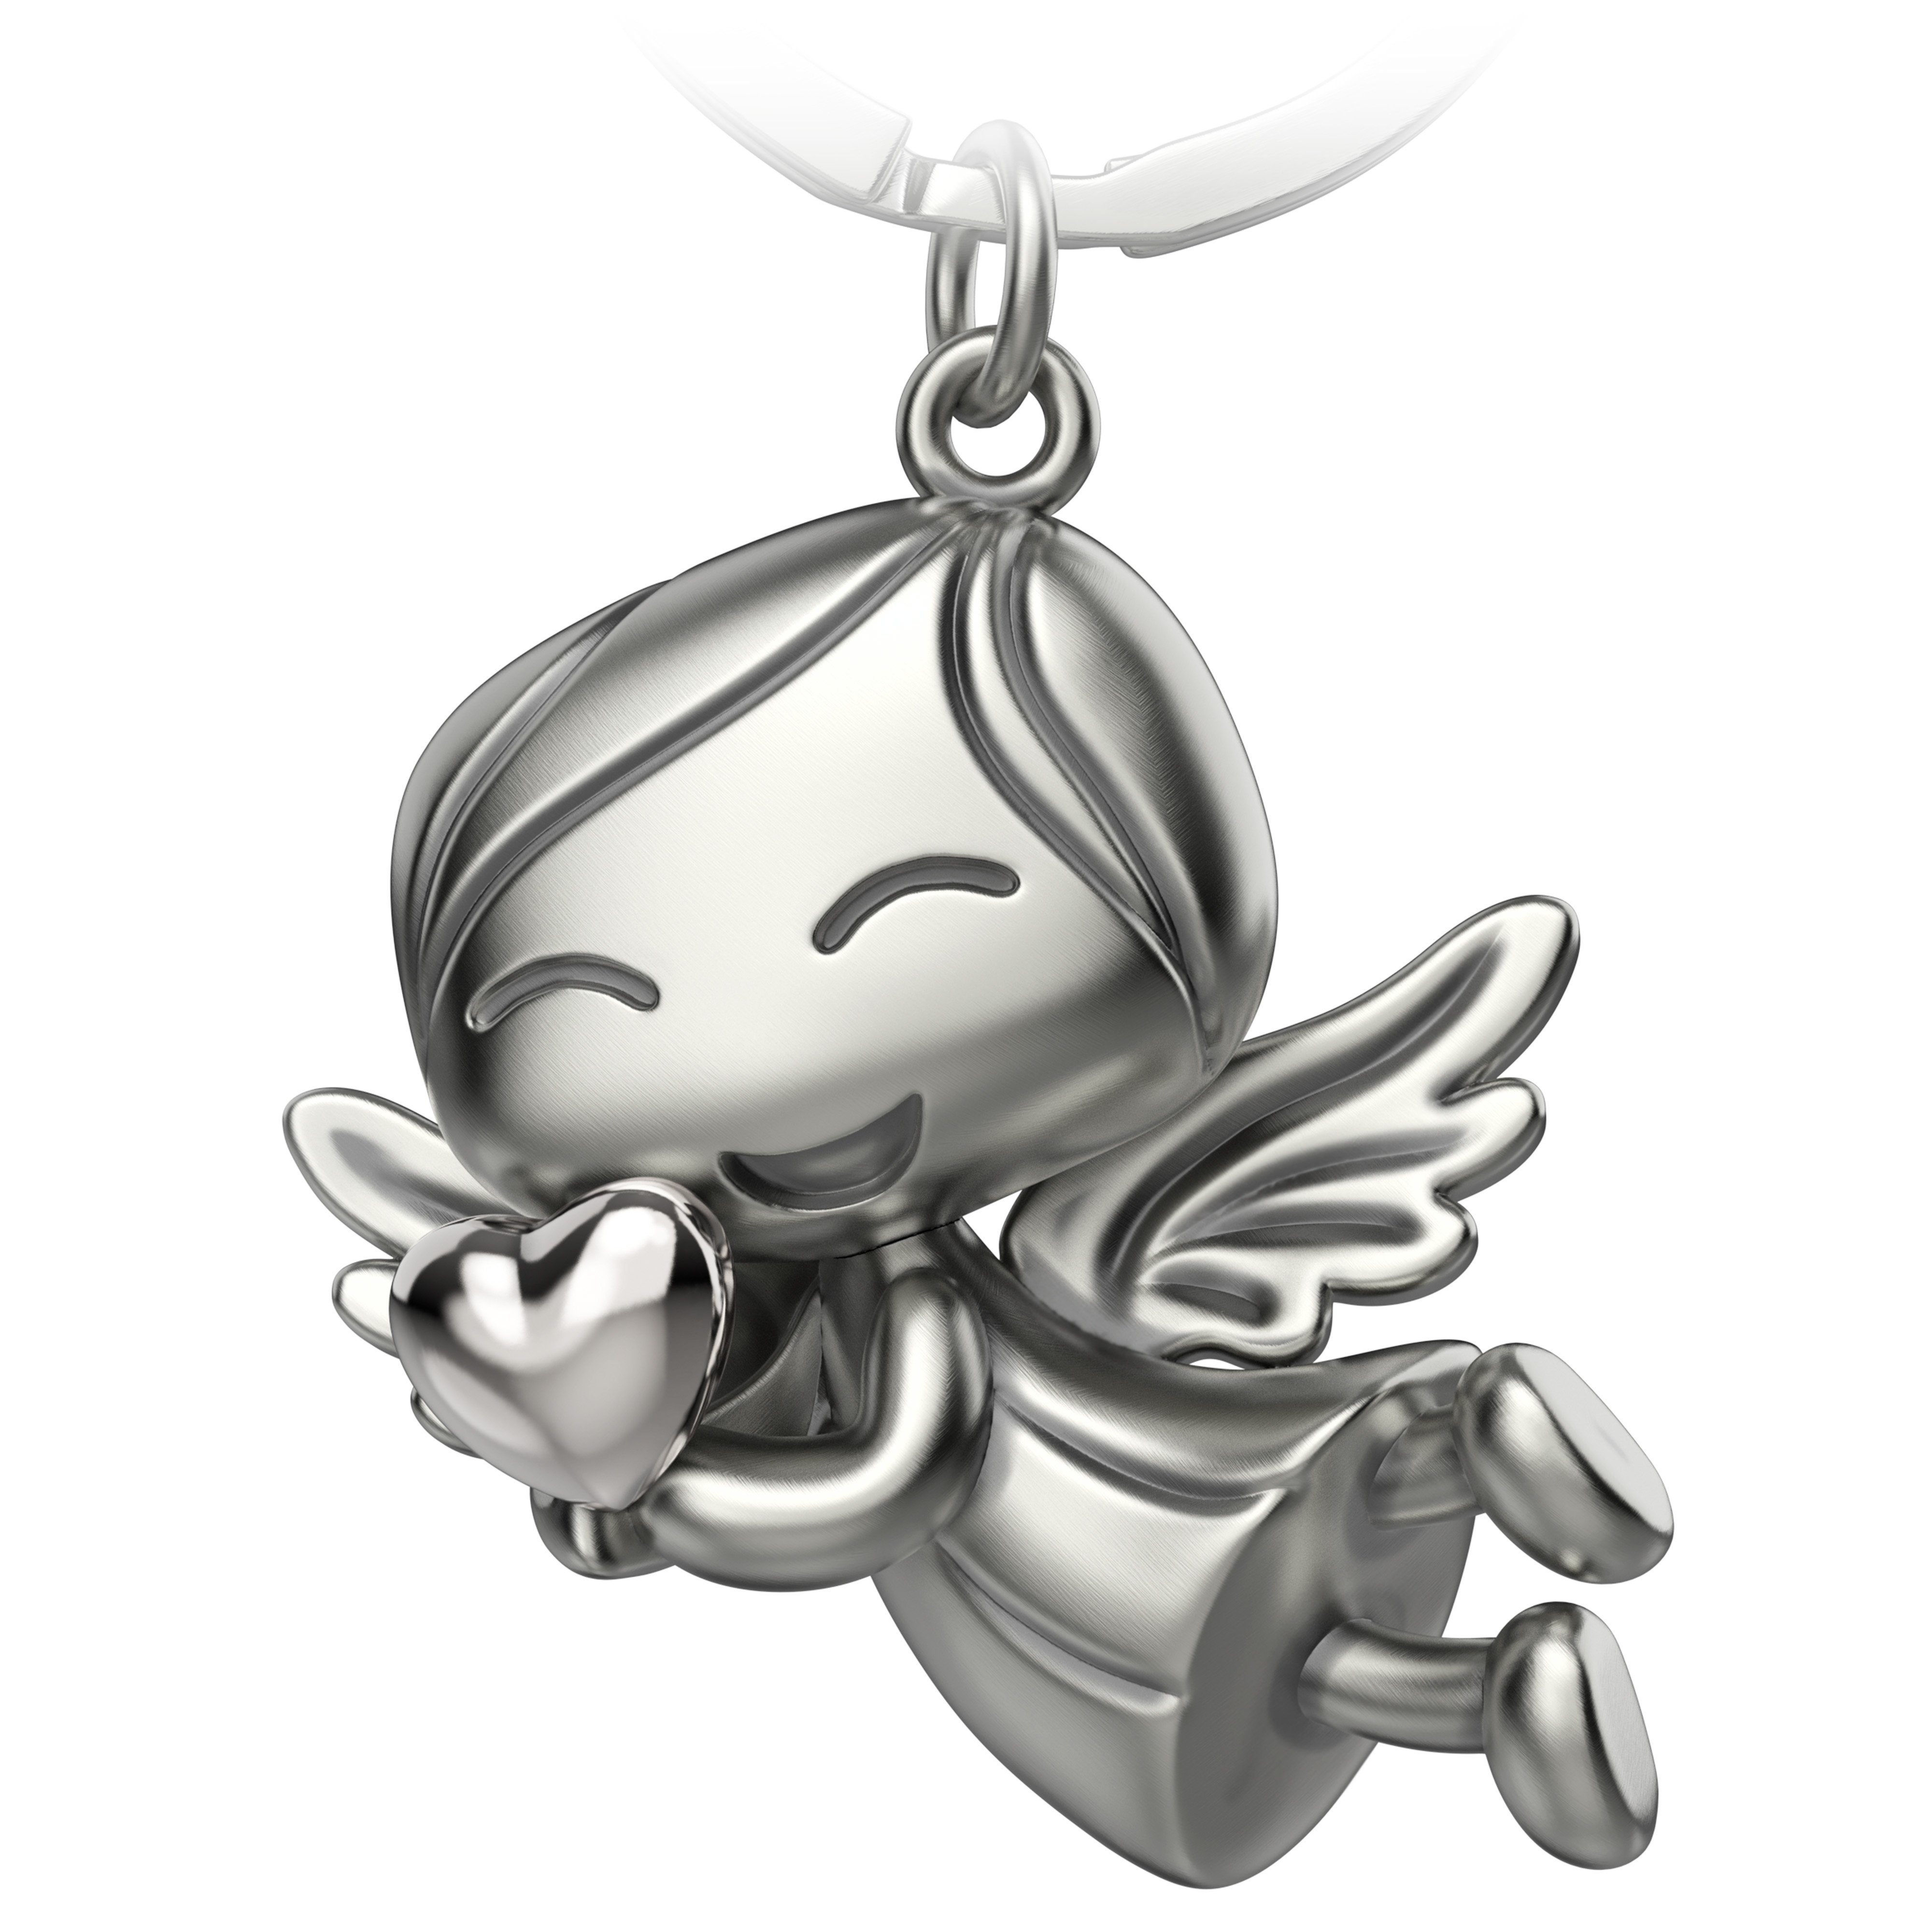 FABACH Schlüsselanhänger Schutzengel "Lucky" - Engel Glücksbringer - Glücksengel mit Herz Silber